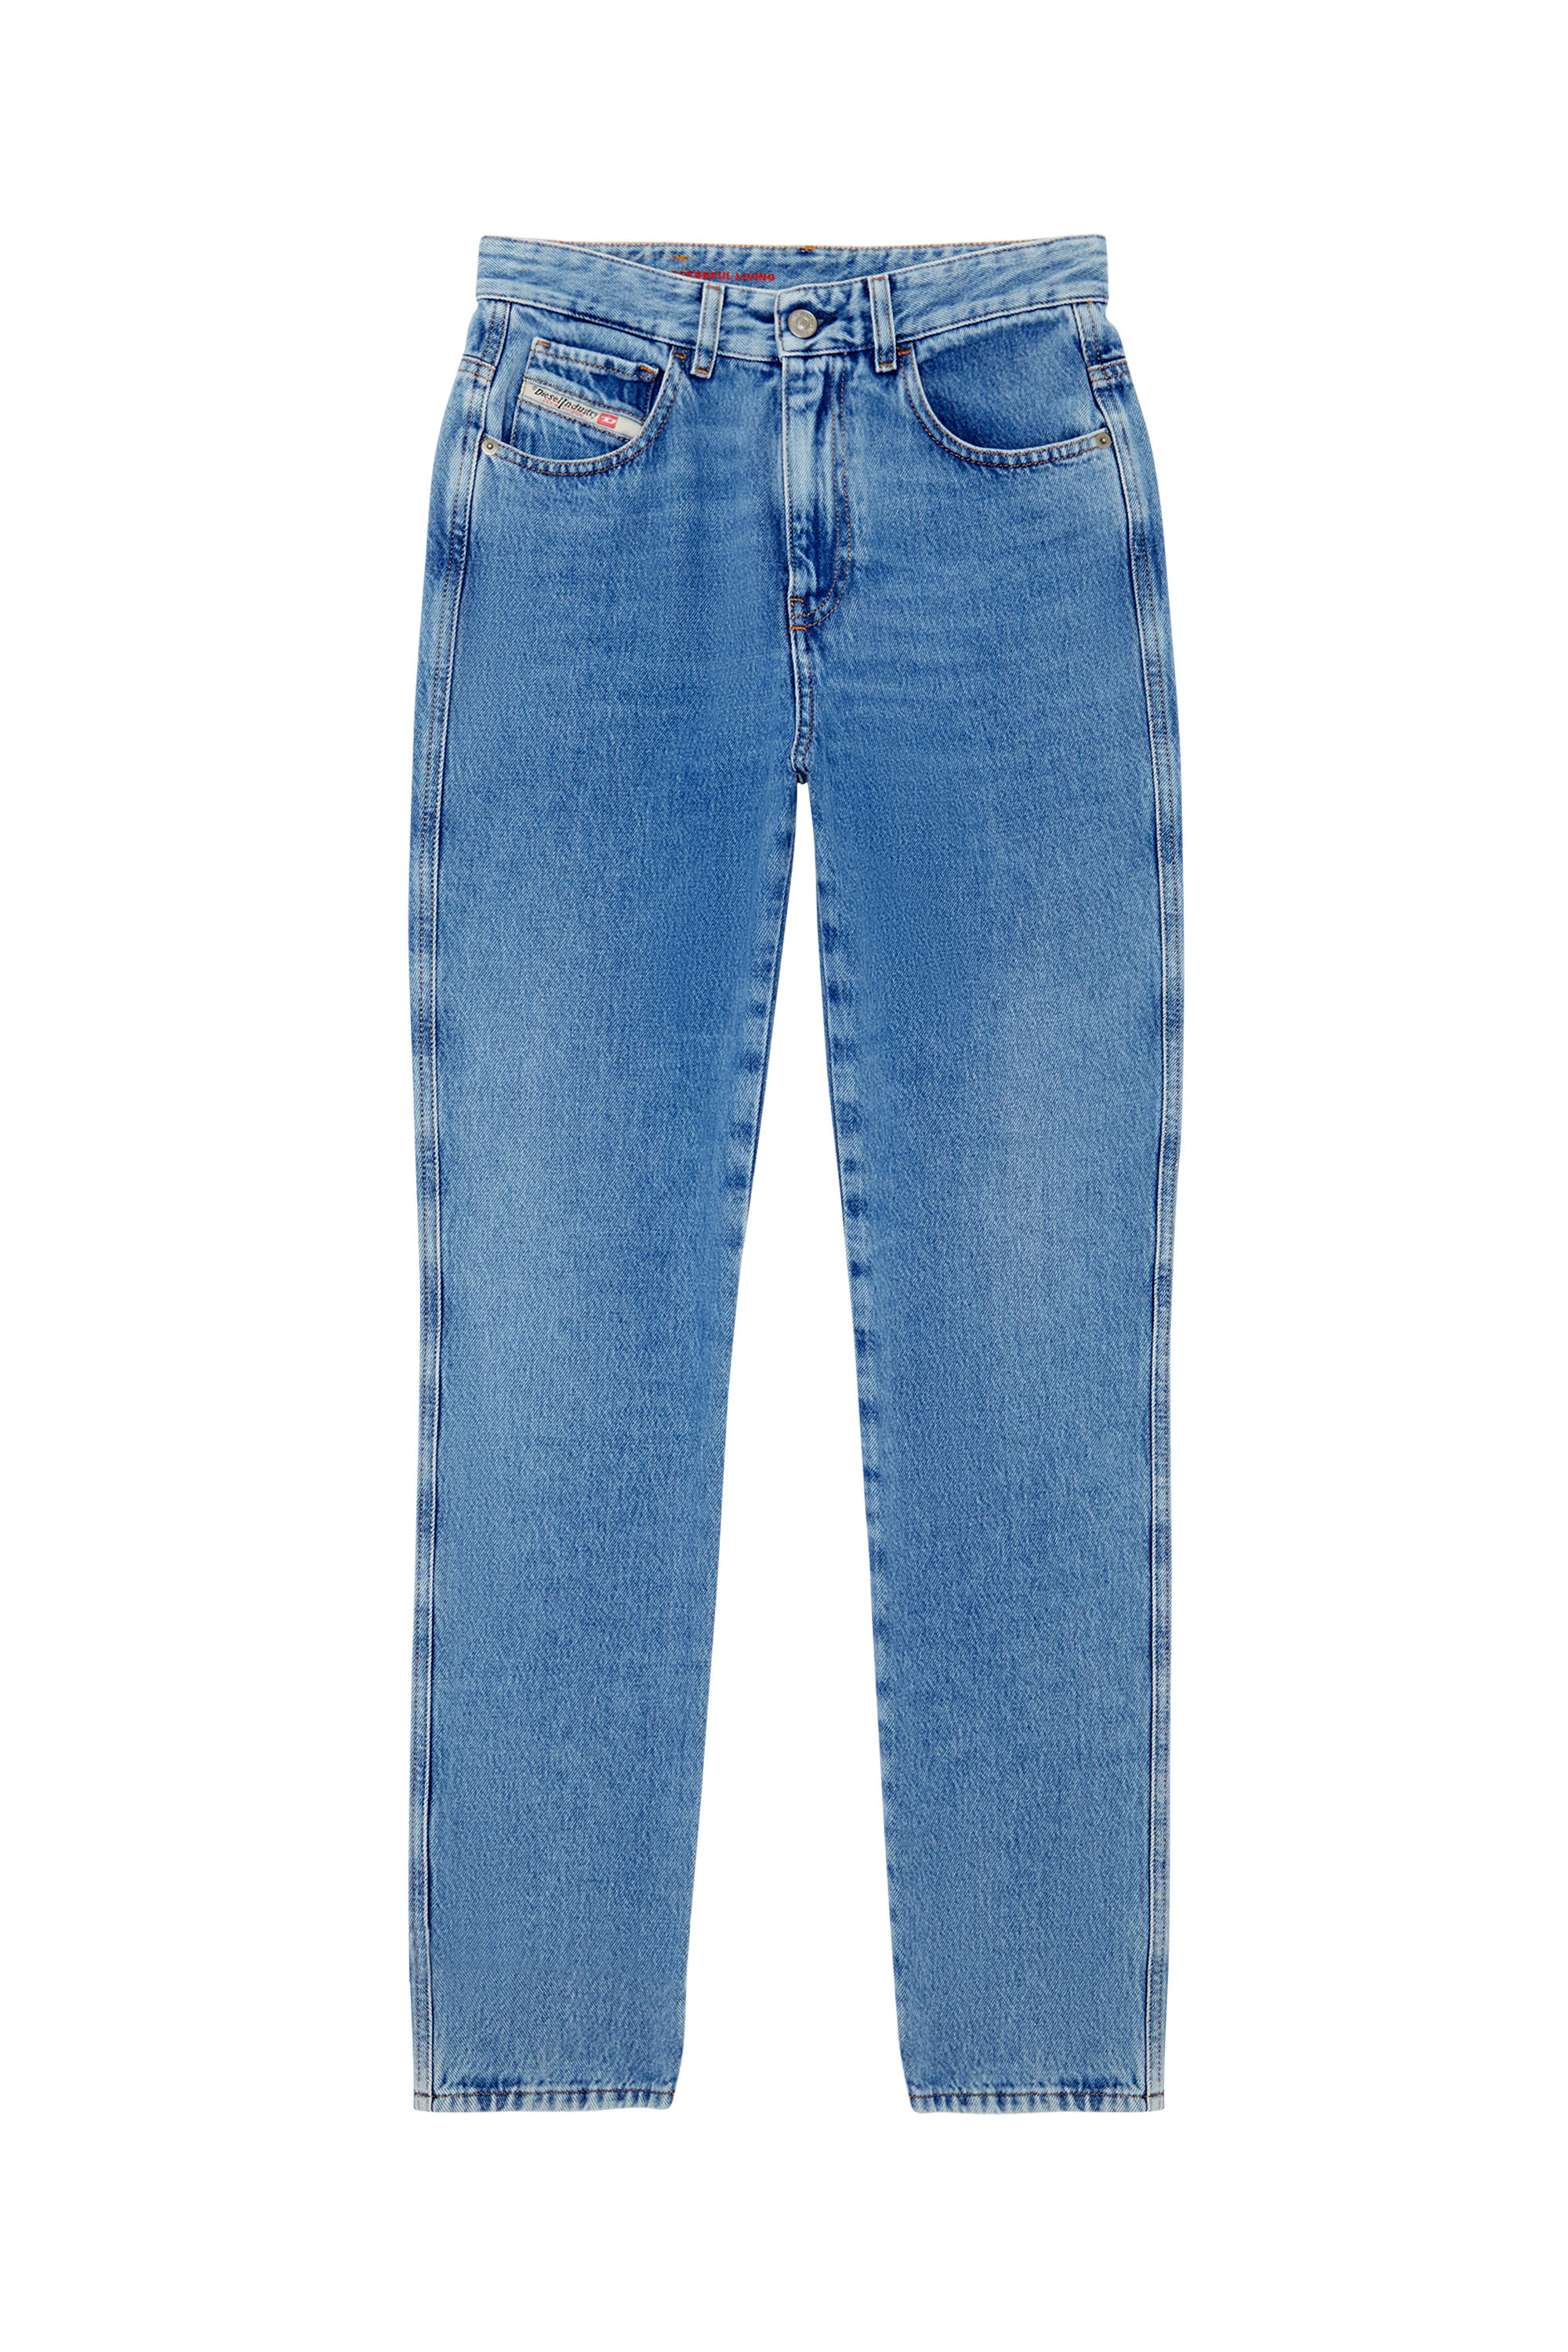 Diesel - Straight Jeans 1994 09C16,  - Image 6